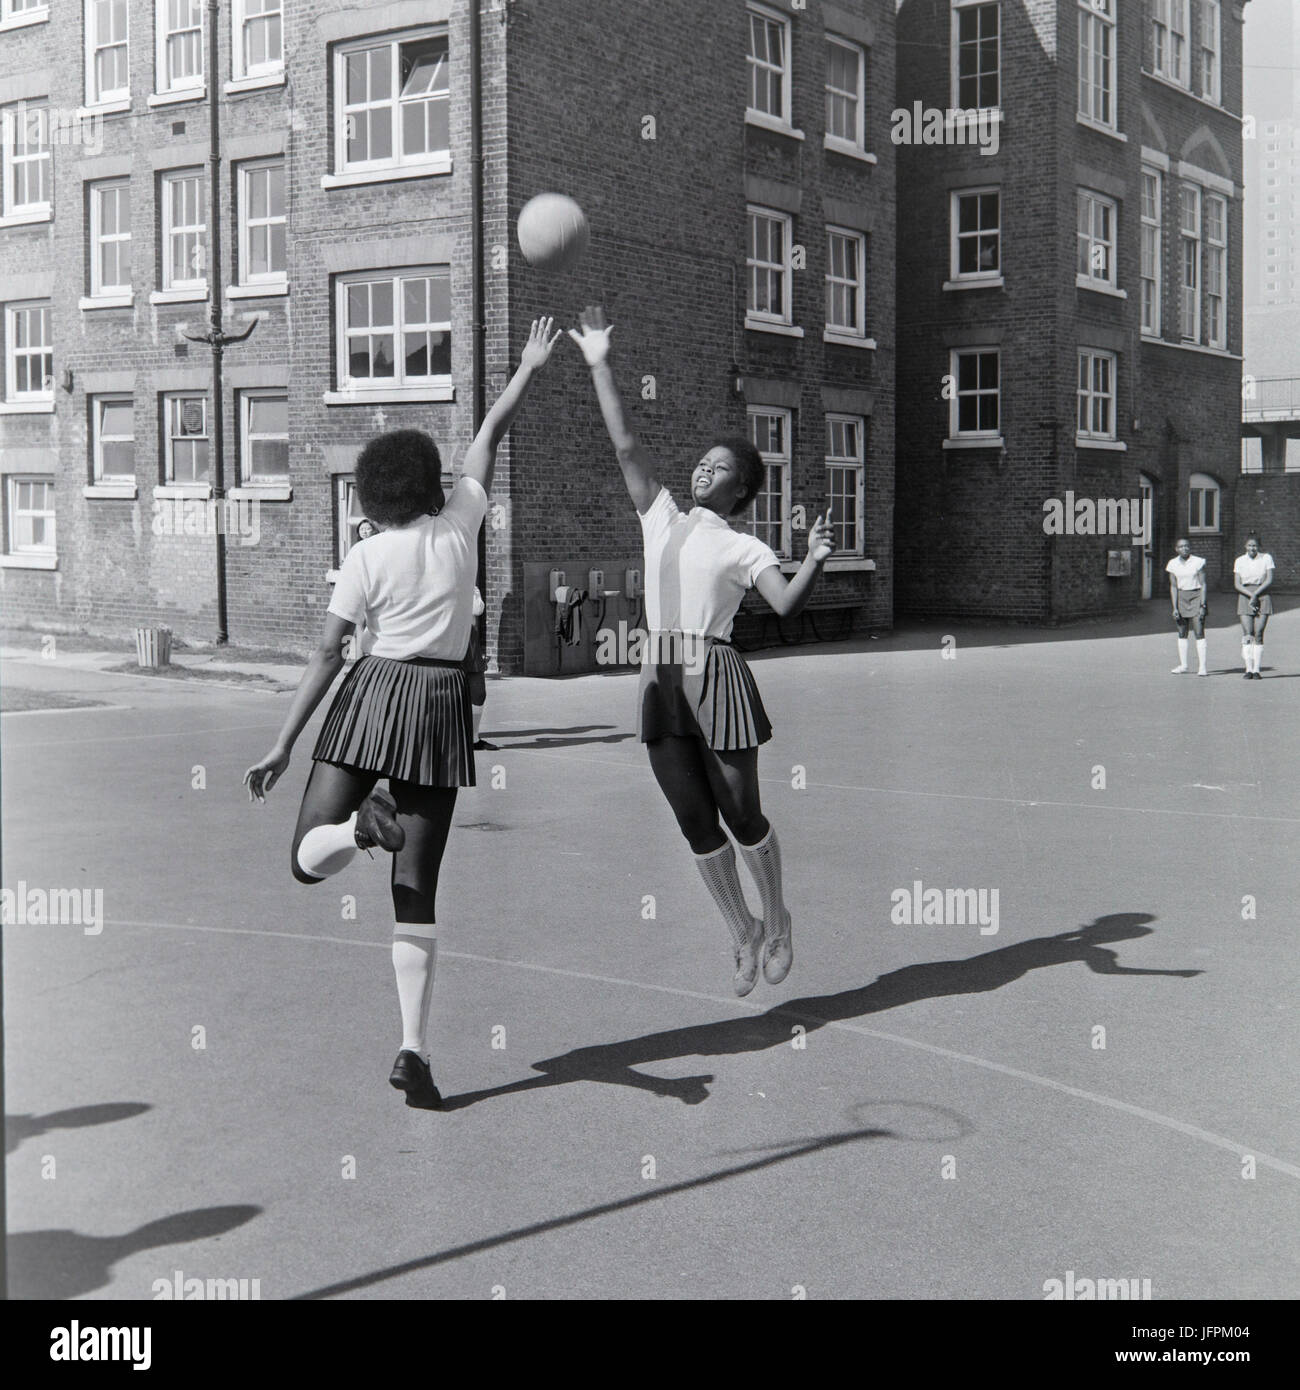 Deux jeunes filles noires, afro caraïbes jouer netball à Londres, en Angleterre, pendant les années 1970. Banque D'Images